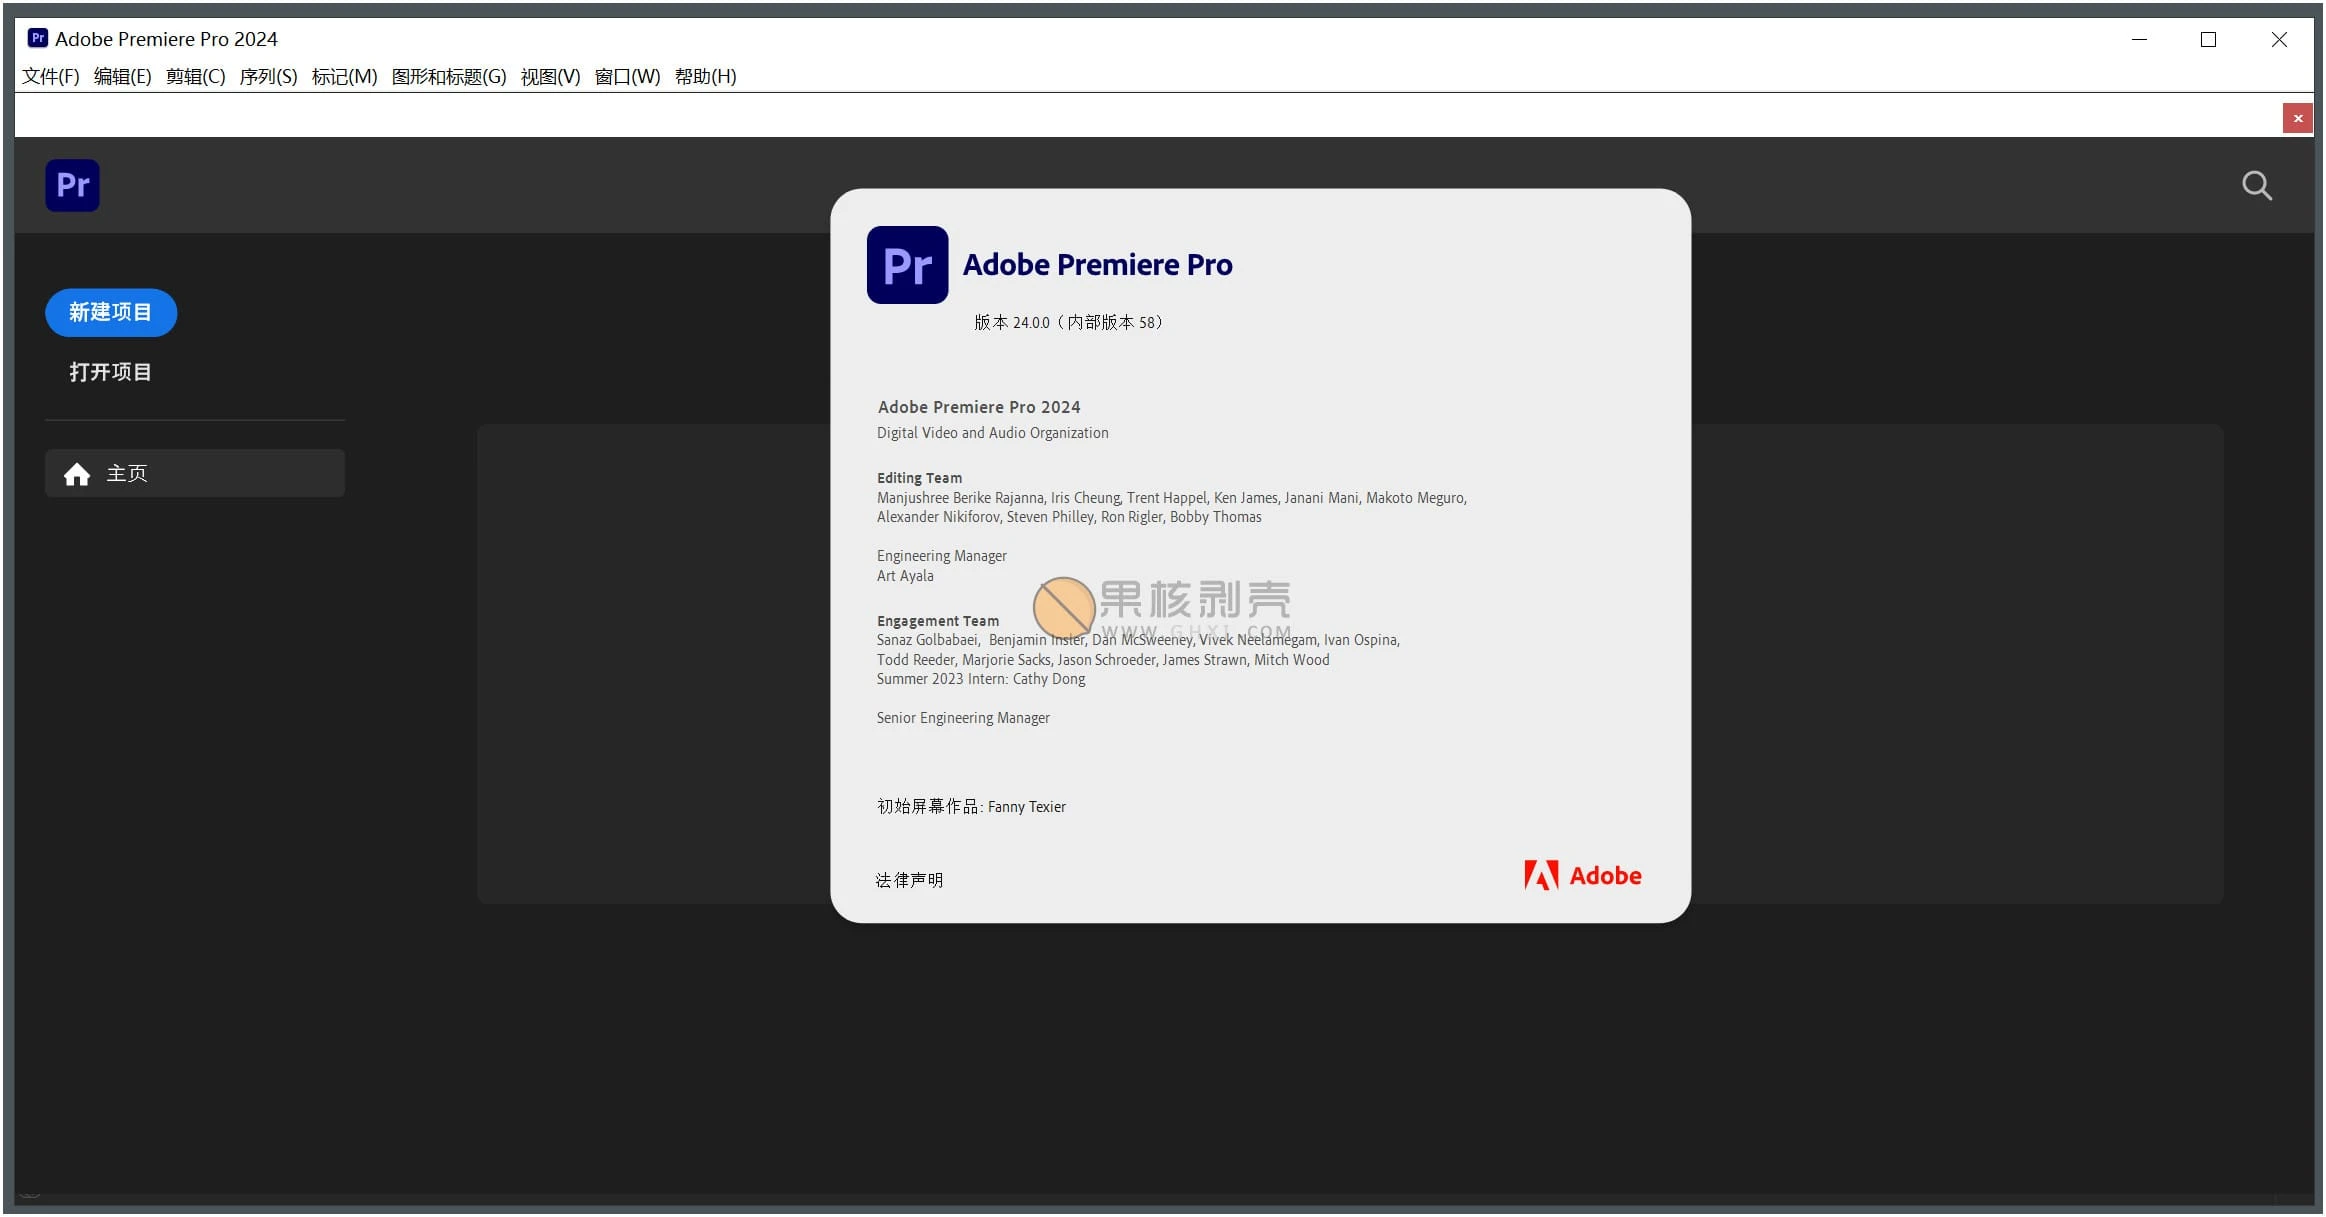 Adobe Premiere Pro 2024 (24.0.3) 特别版